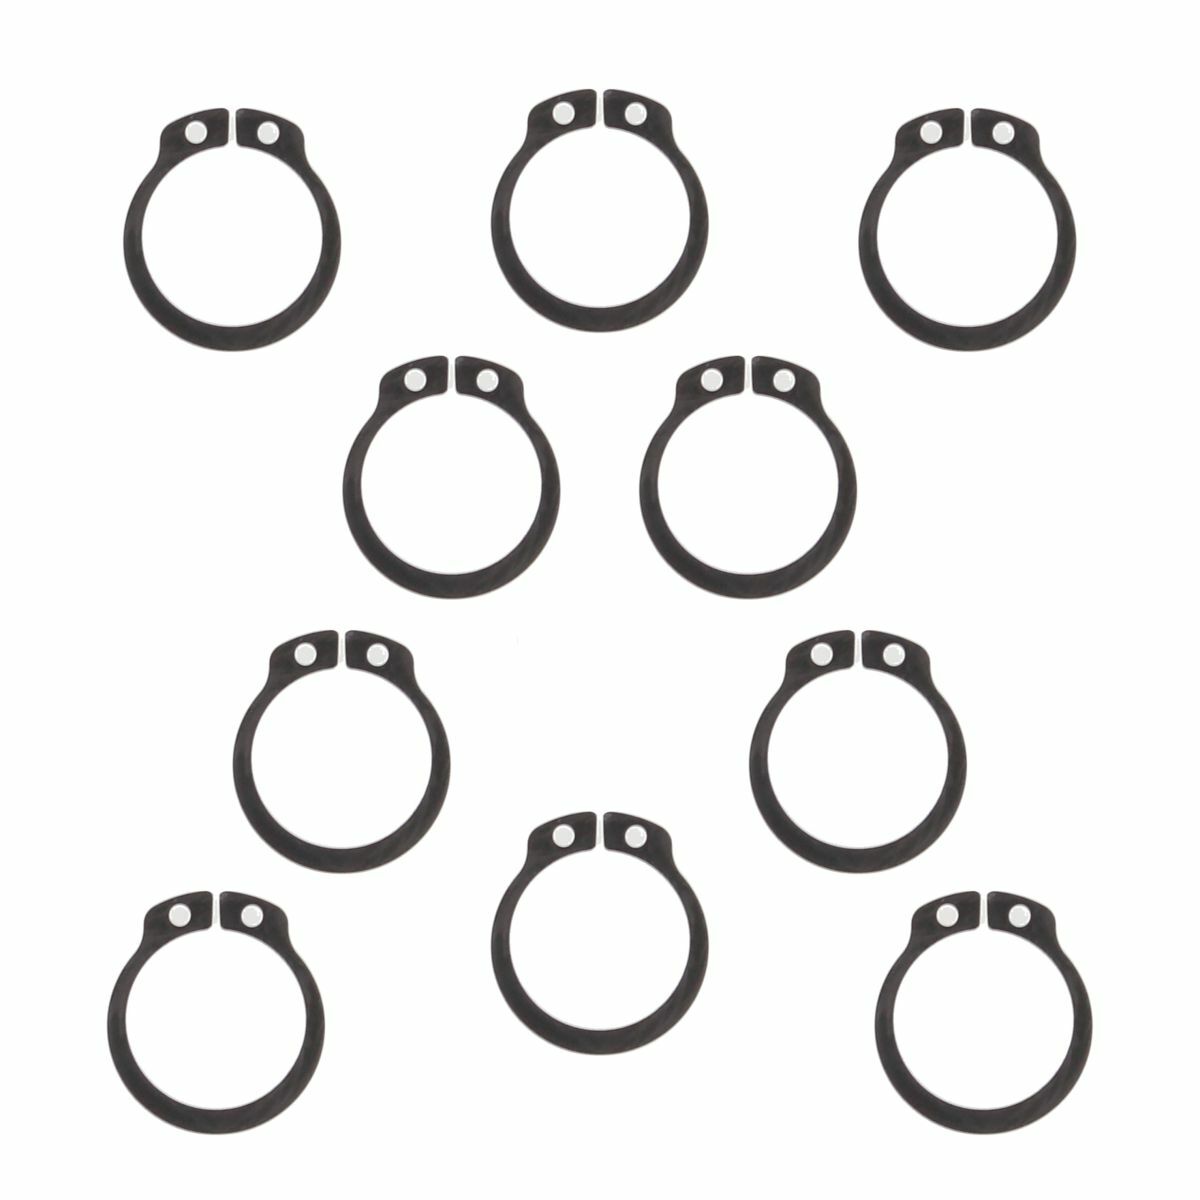 Obrázek produktu Podložky k řetězovému kolečku All Balls Racing (balení po 10 ks)